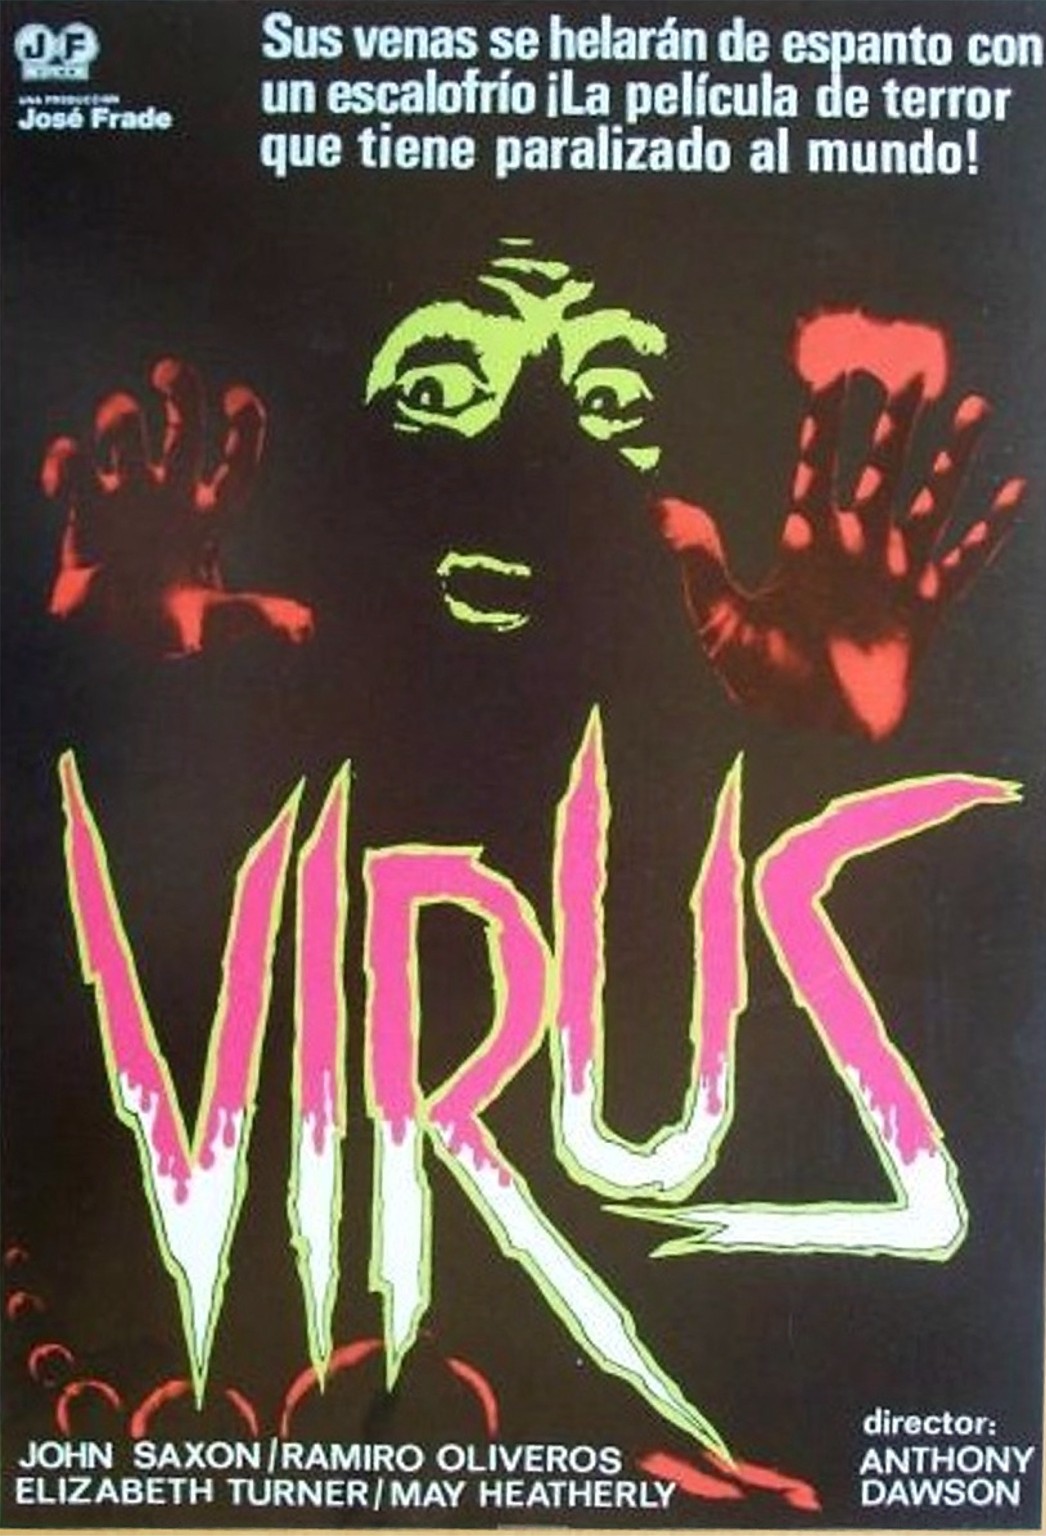 [virus2.jpg]